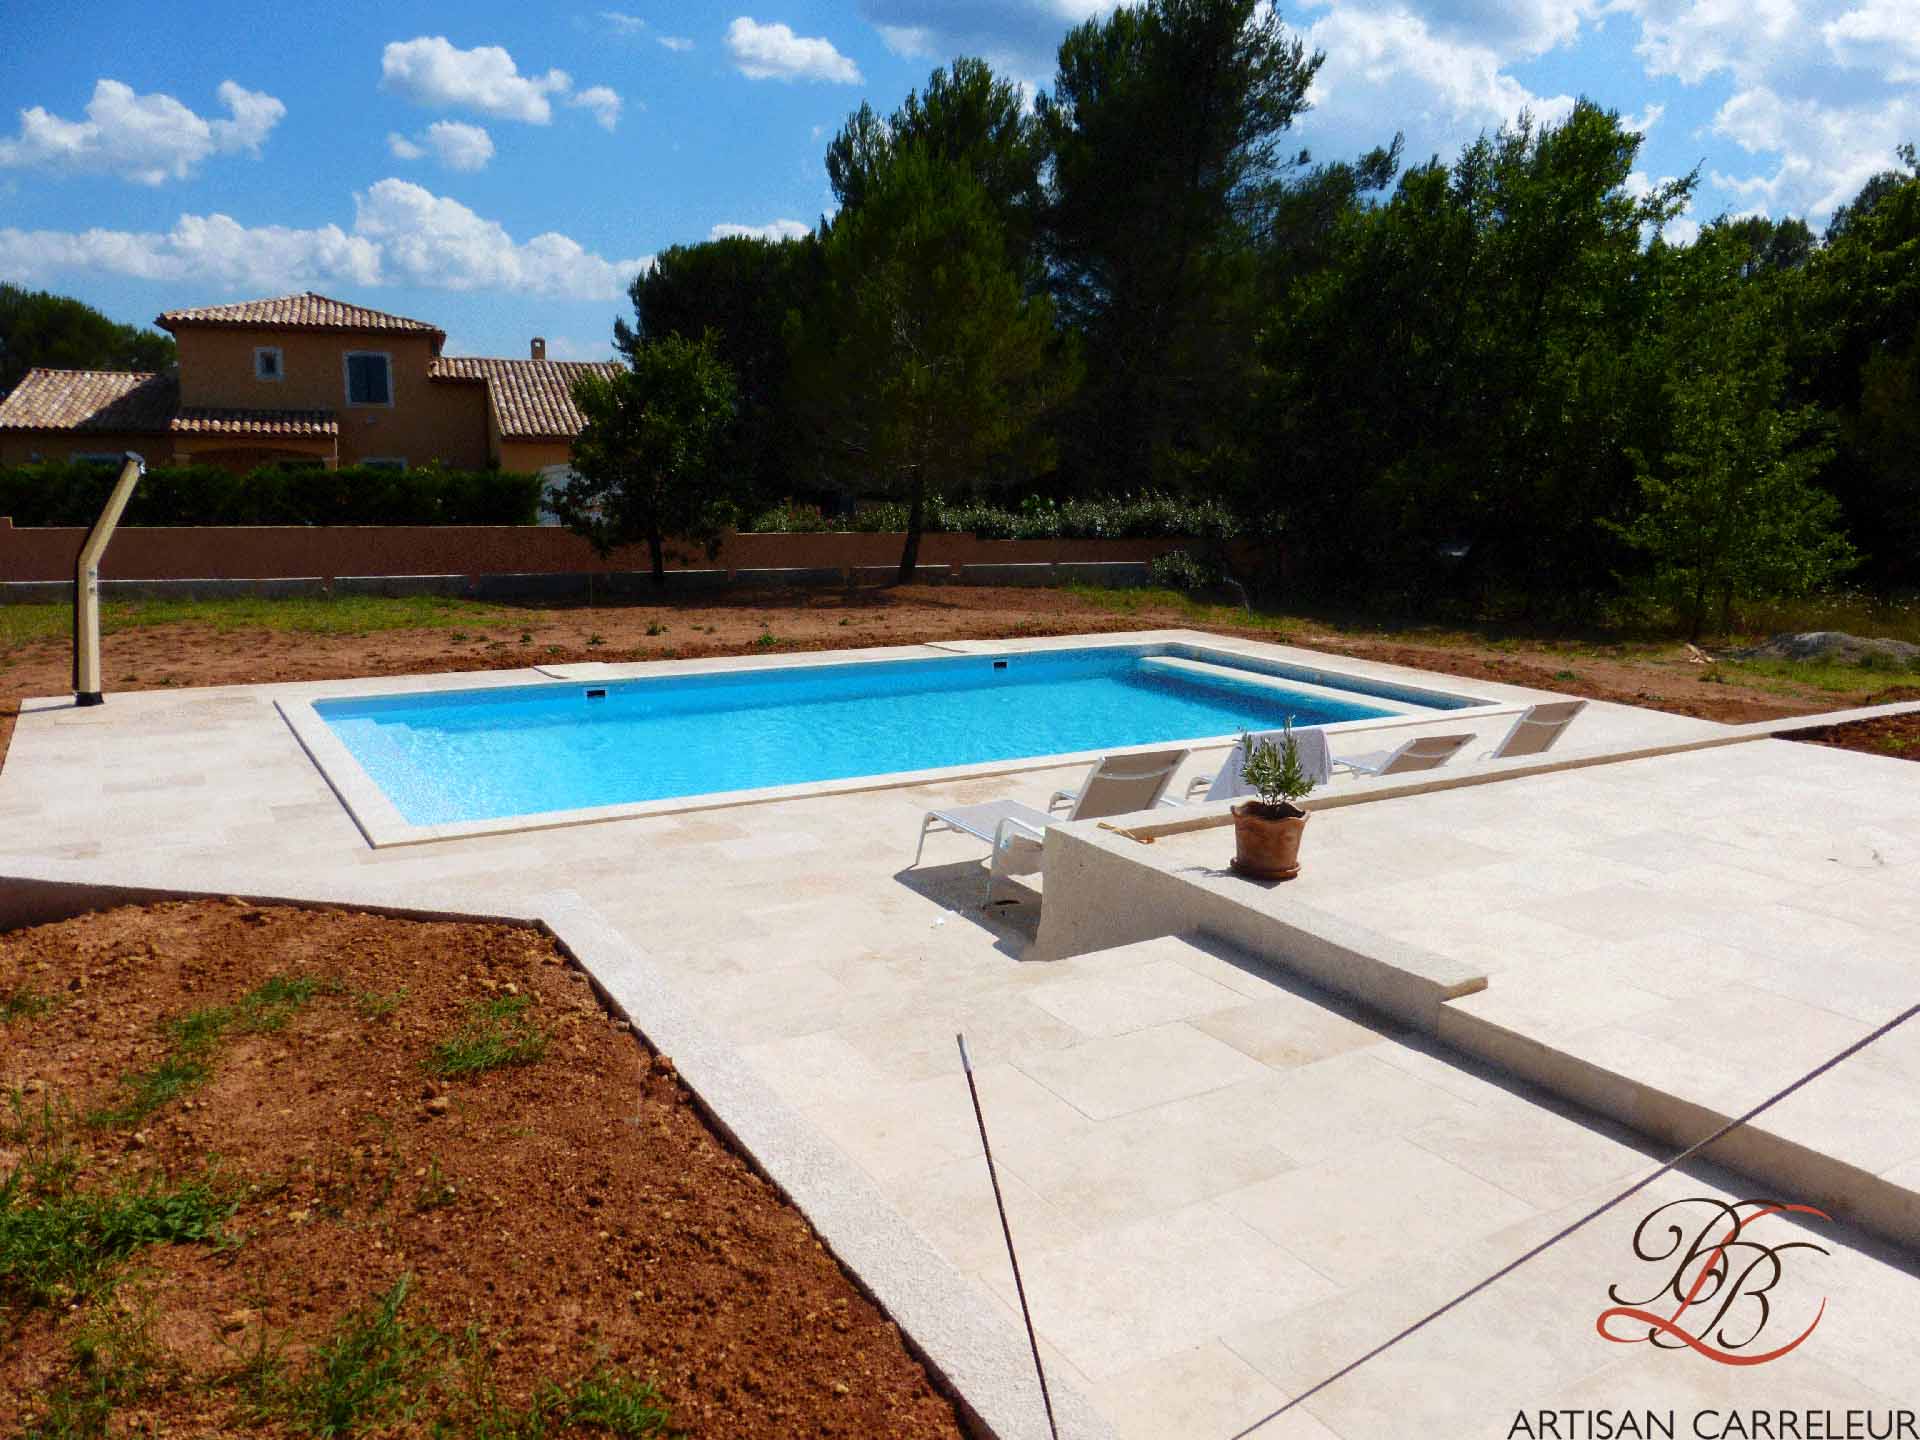 Réalisation d’une terrasse de piscine en travertin à la Motte en Provence